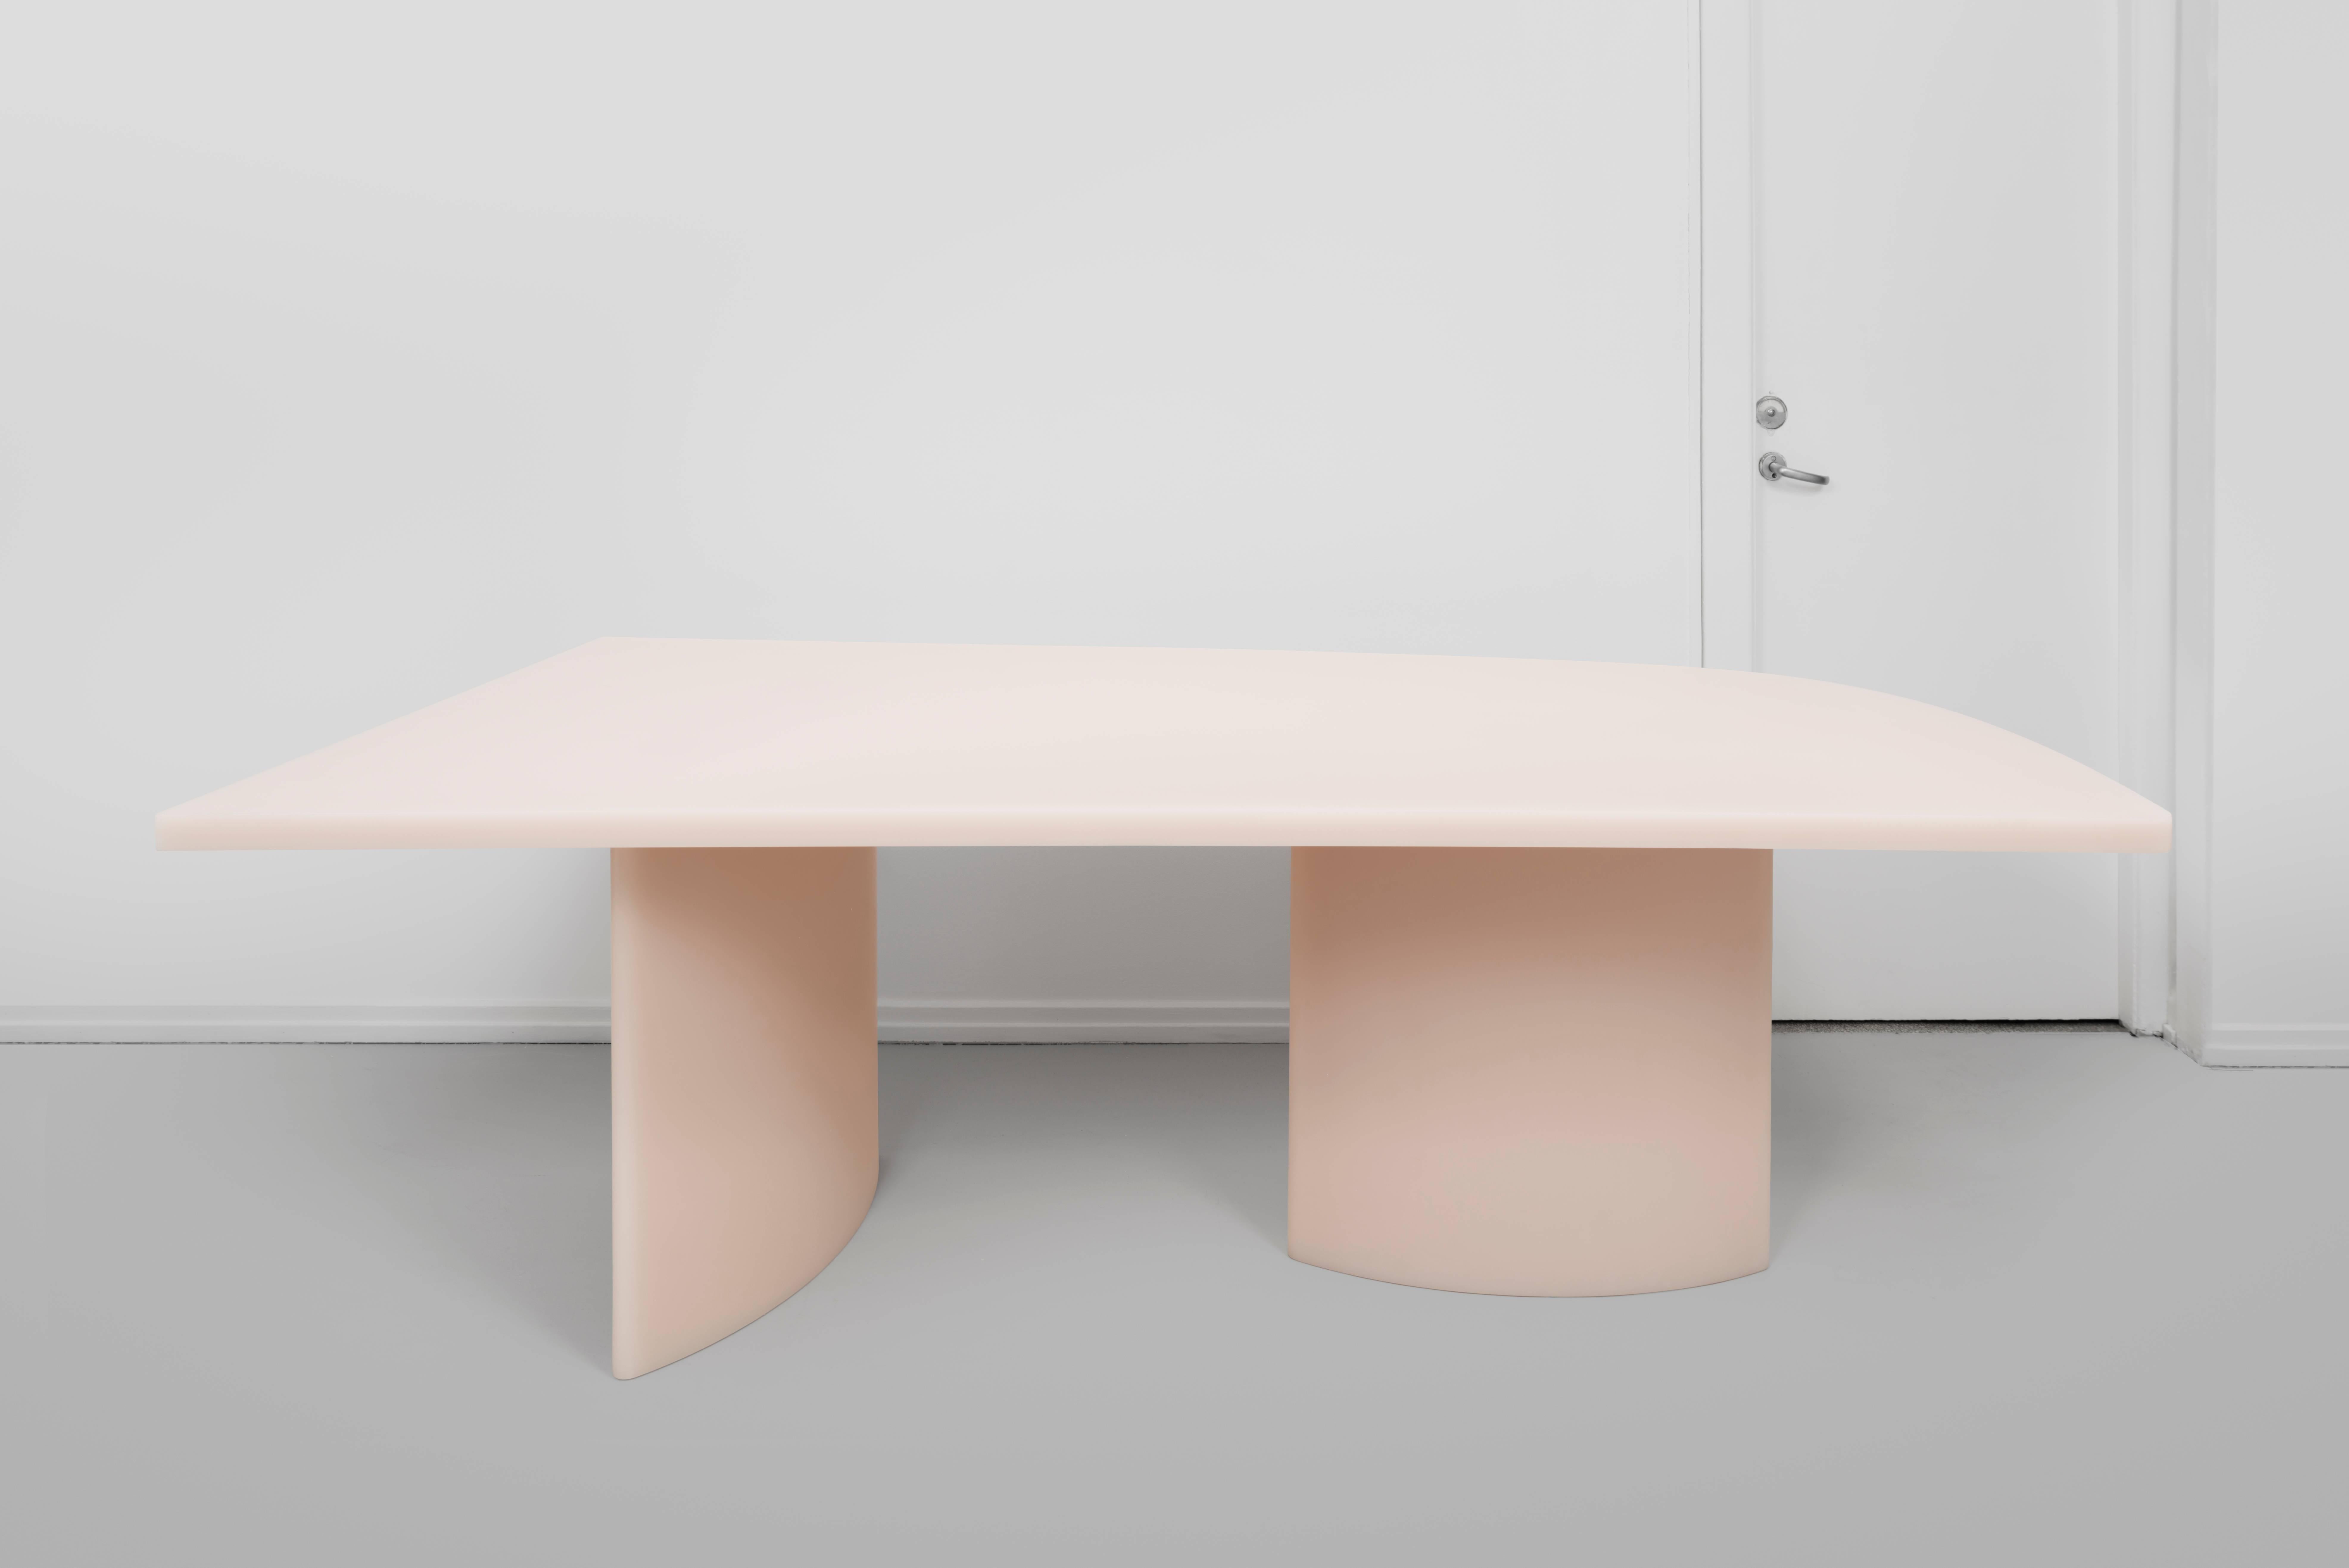 Devenue un classique du design contemporain, la table Soap blanc cassé de Sabine Marcelis, dévoilée pour la première fois à Nomad St Moritz 2018, constitue un cadre de dîner dynamique, mettant en scène sa résine signature à la surface mate